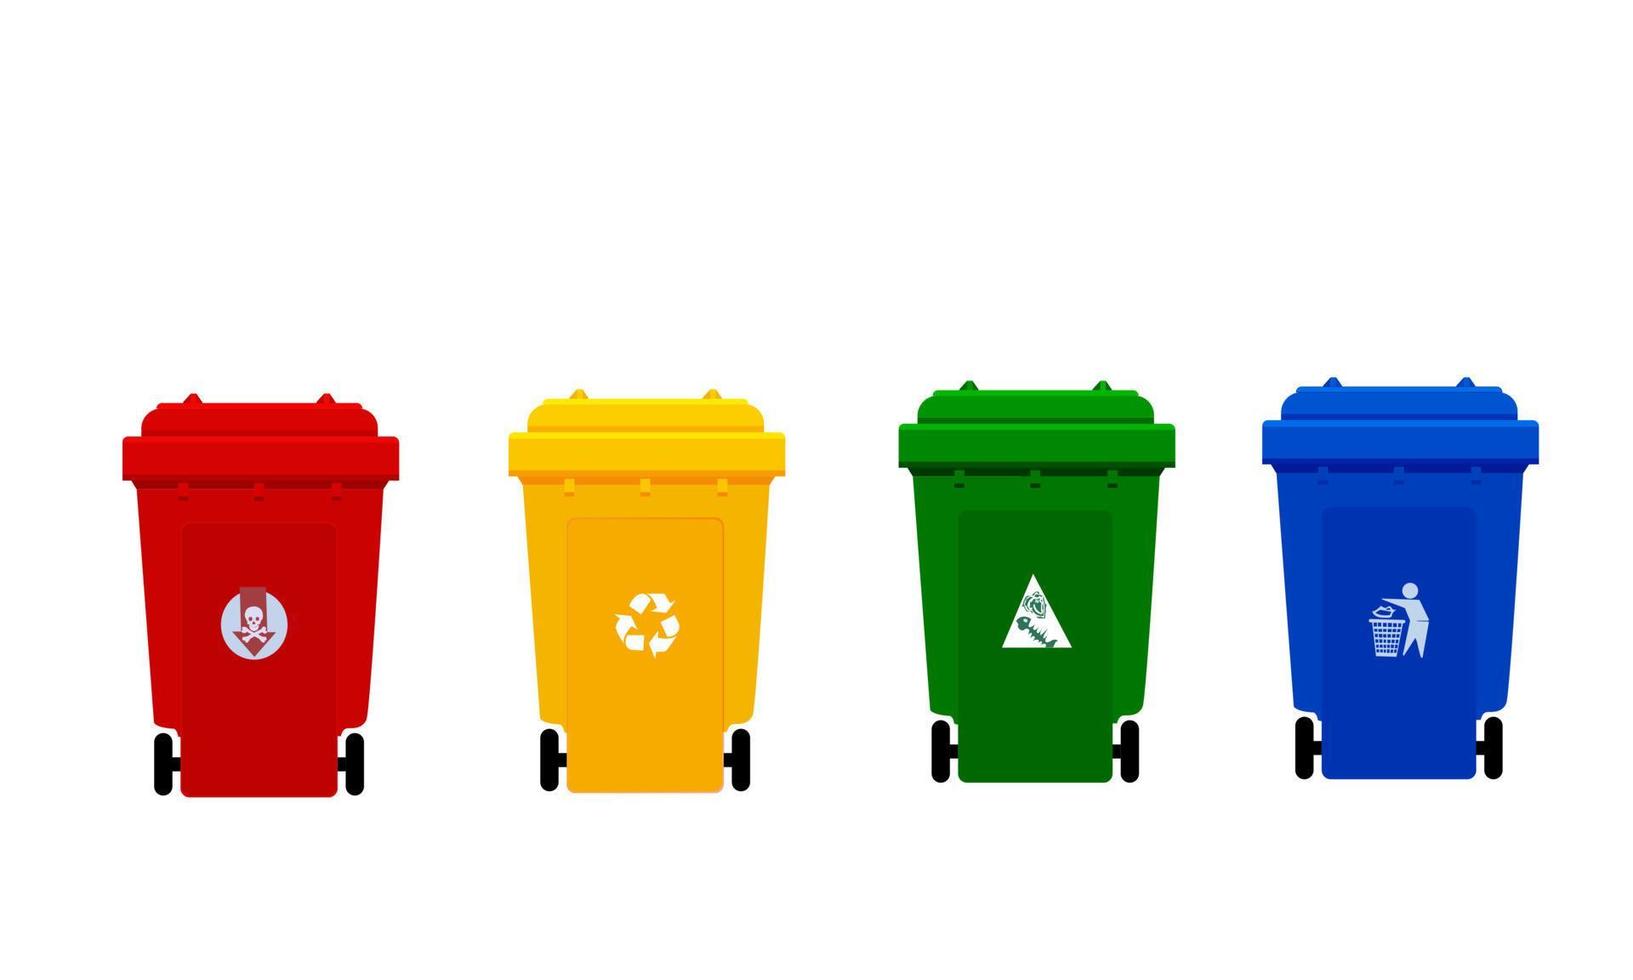 cestino della spazzatura di plastica, cestino della spazzatura a quattro colori rosso, giallo, verde e blu con il simbolo, l'immagine anteriore di tutti e quattro i contenitori dei rifiuti di plastica, vettore